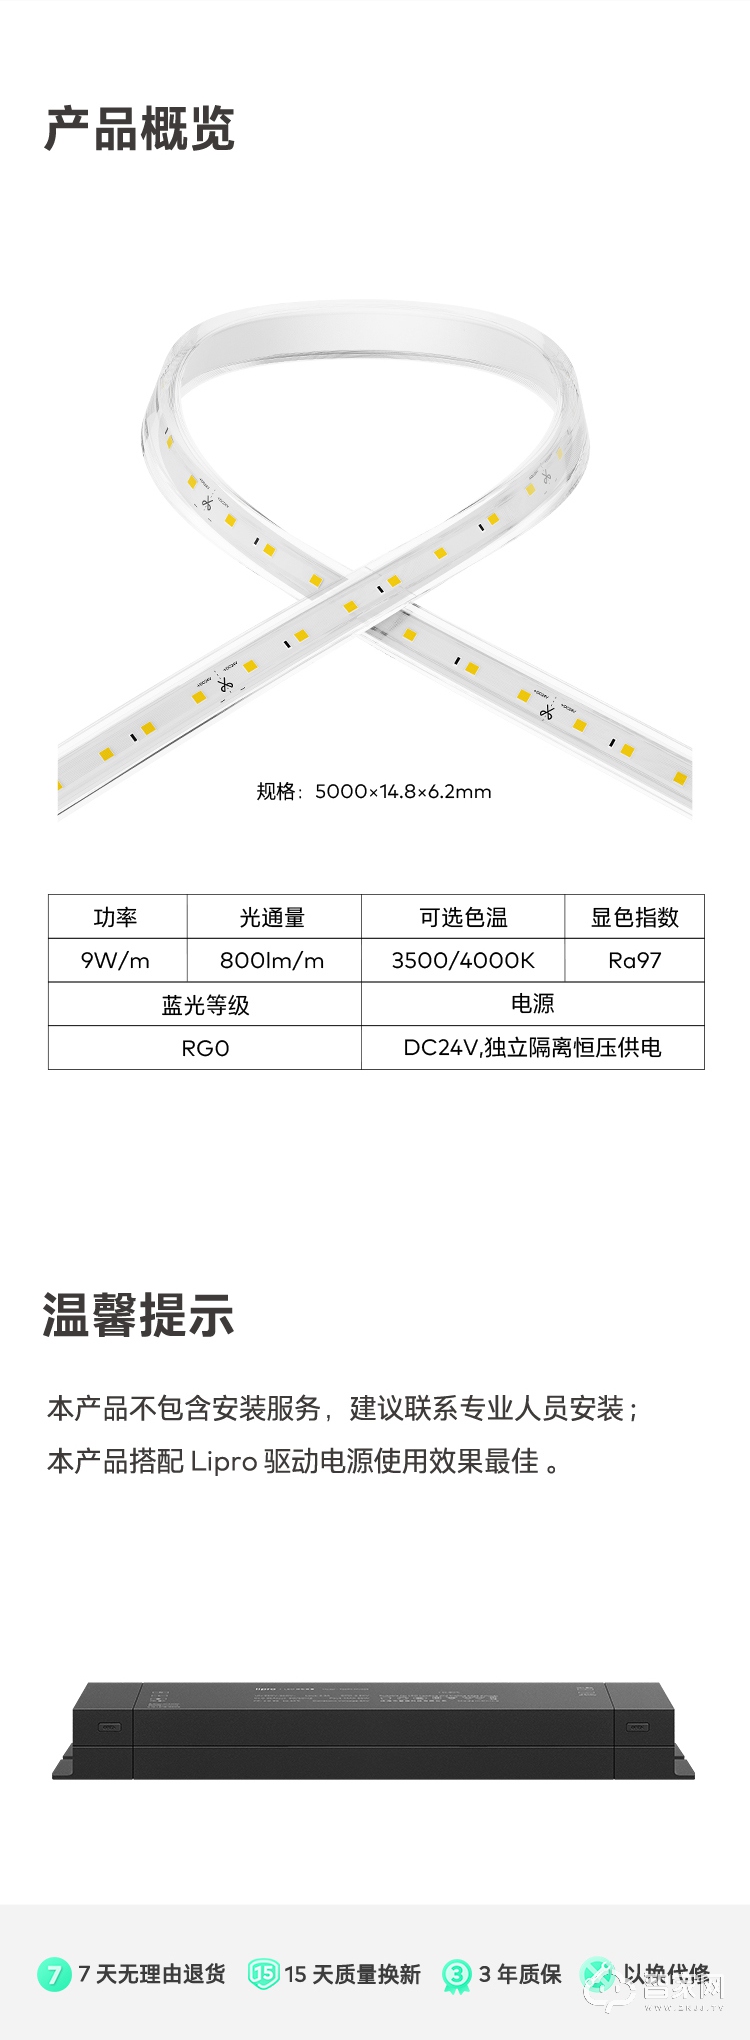 魅族Lipro LED灯带 柔性设计 随处可用